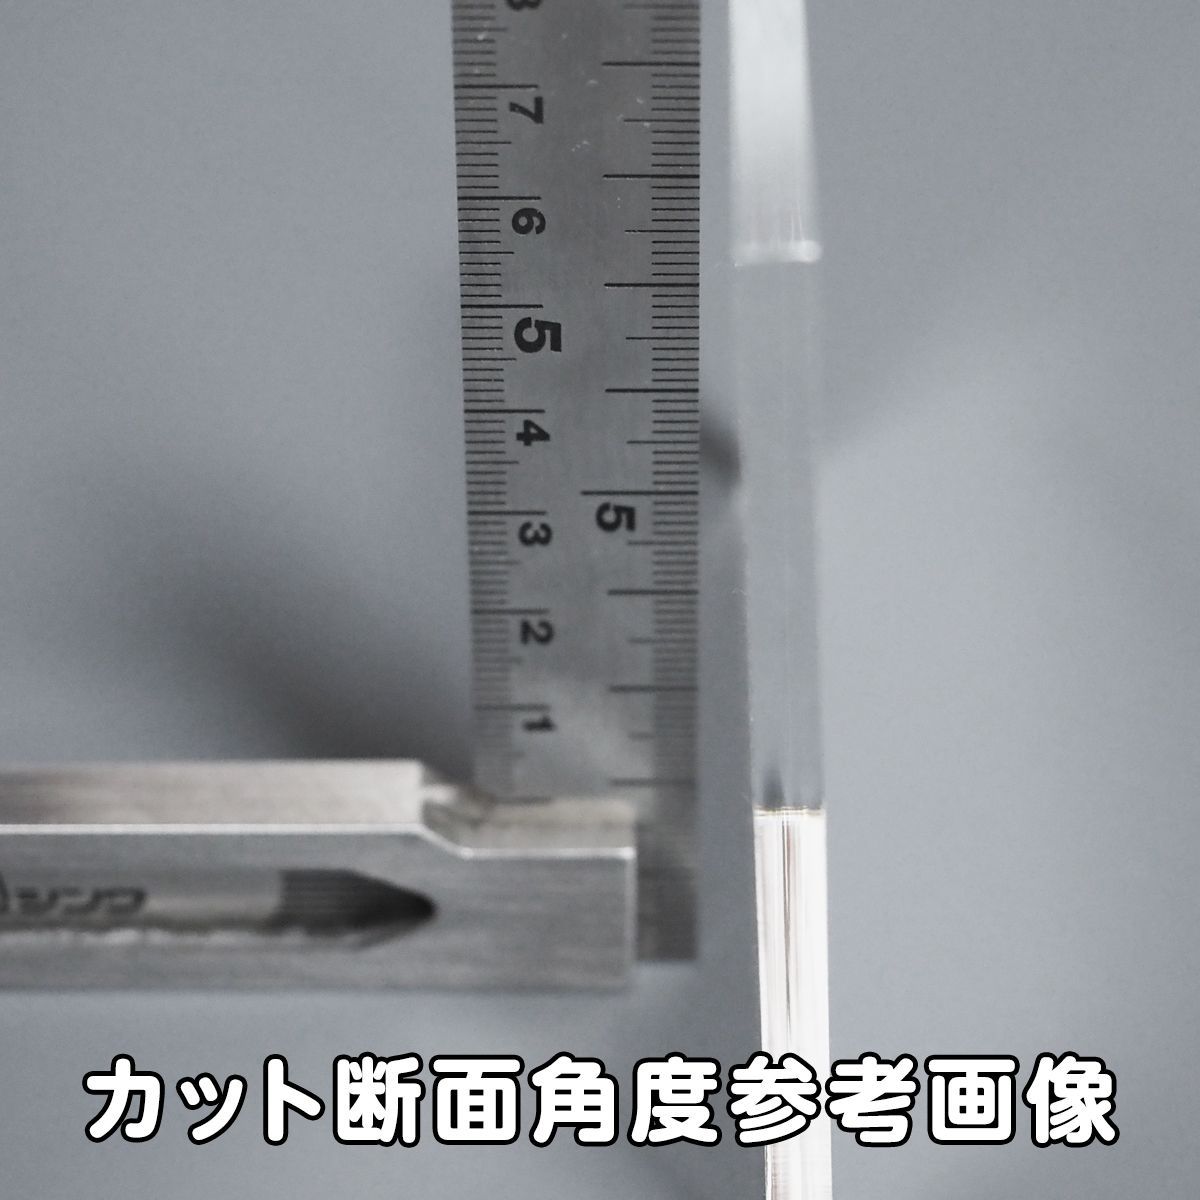 乳白半透明 アクリル 5mm厚 円形 直径10cm 2個セット - メルカリ